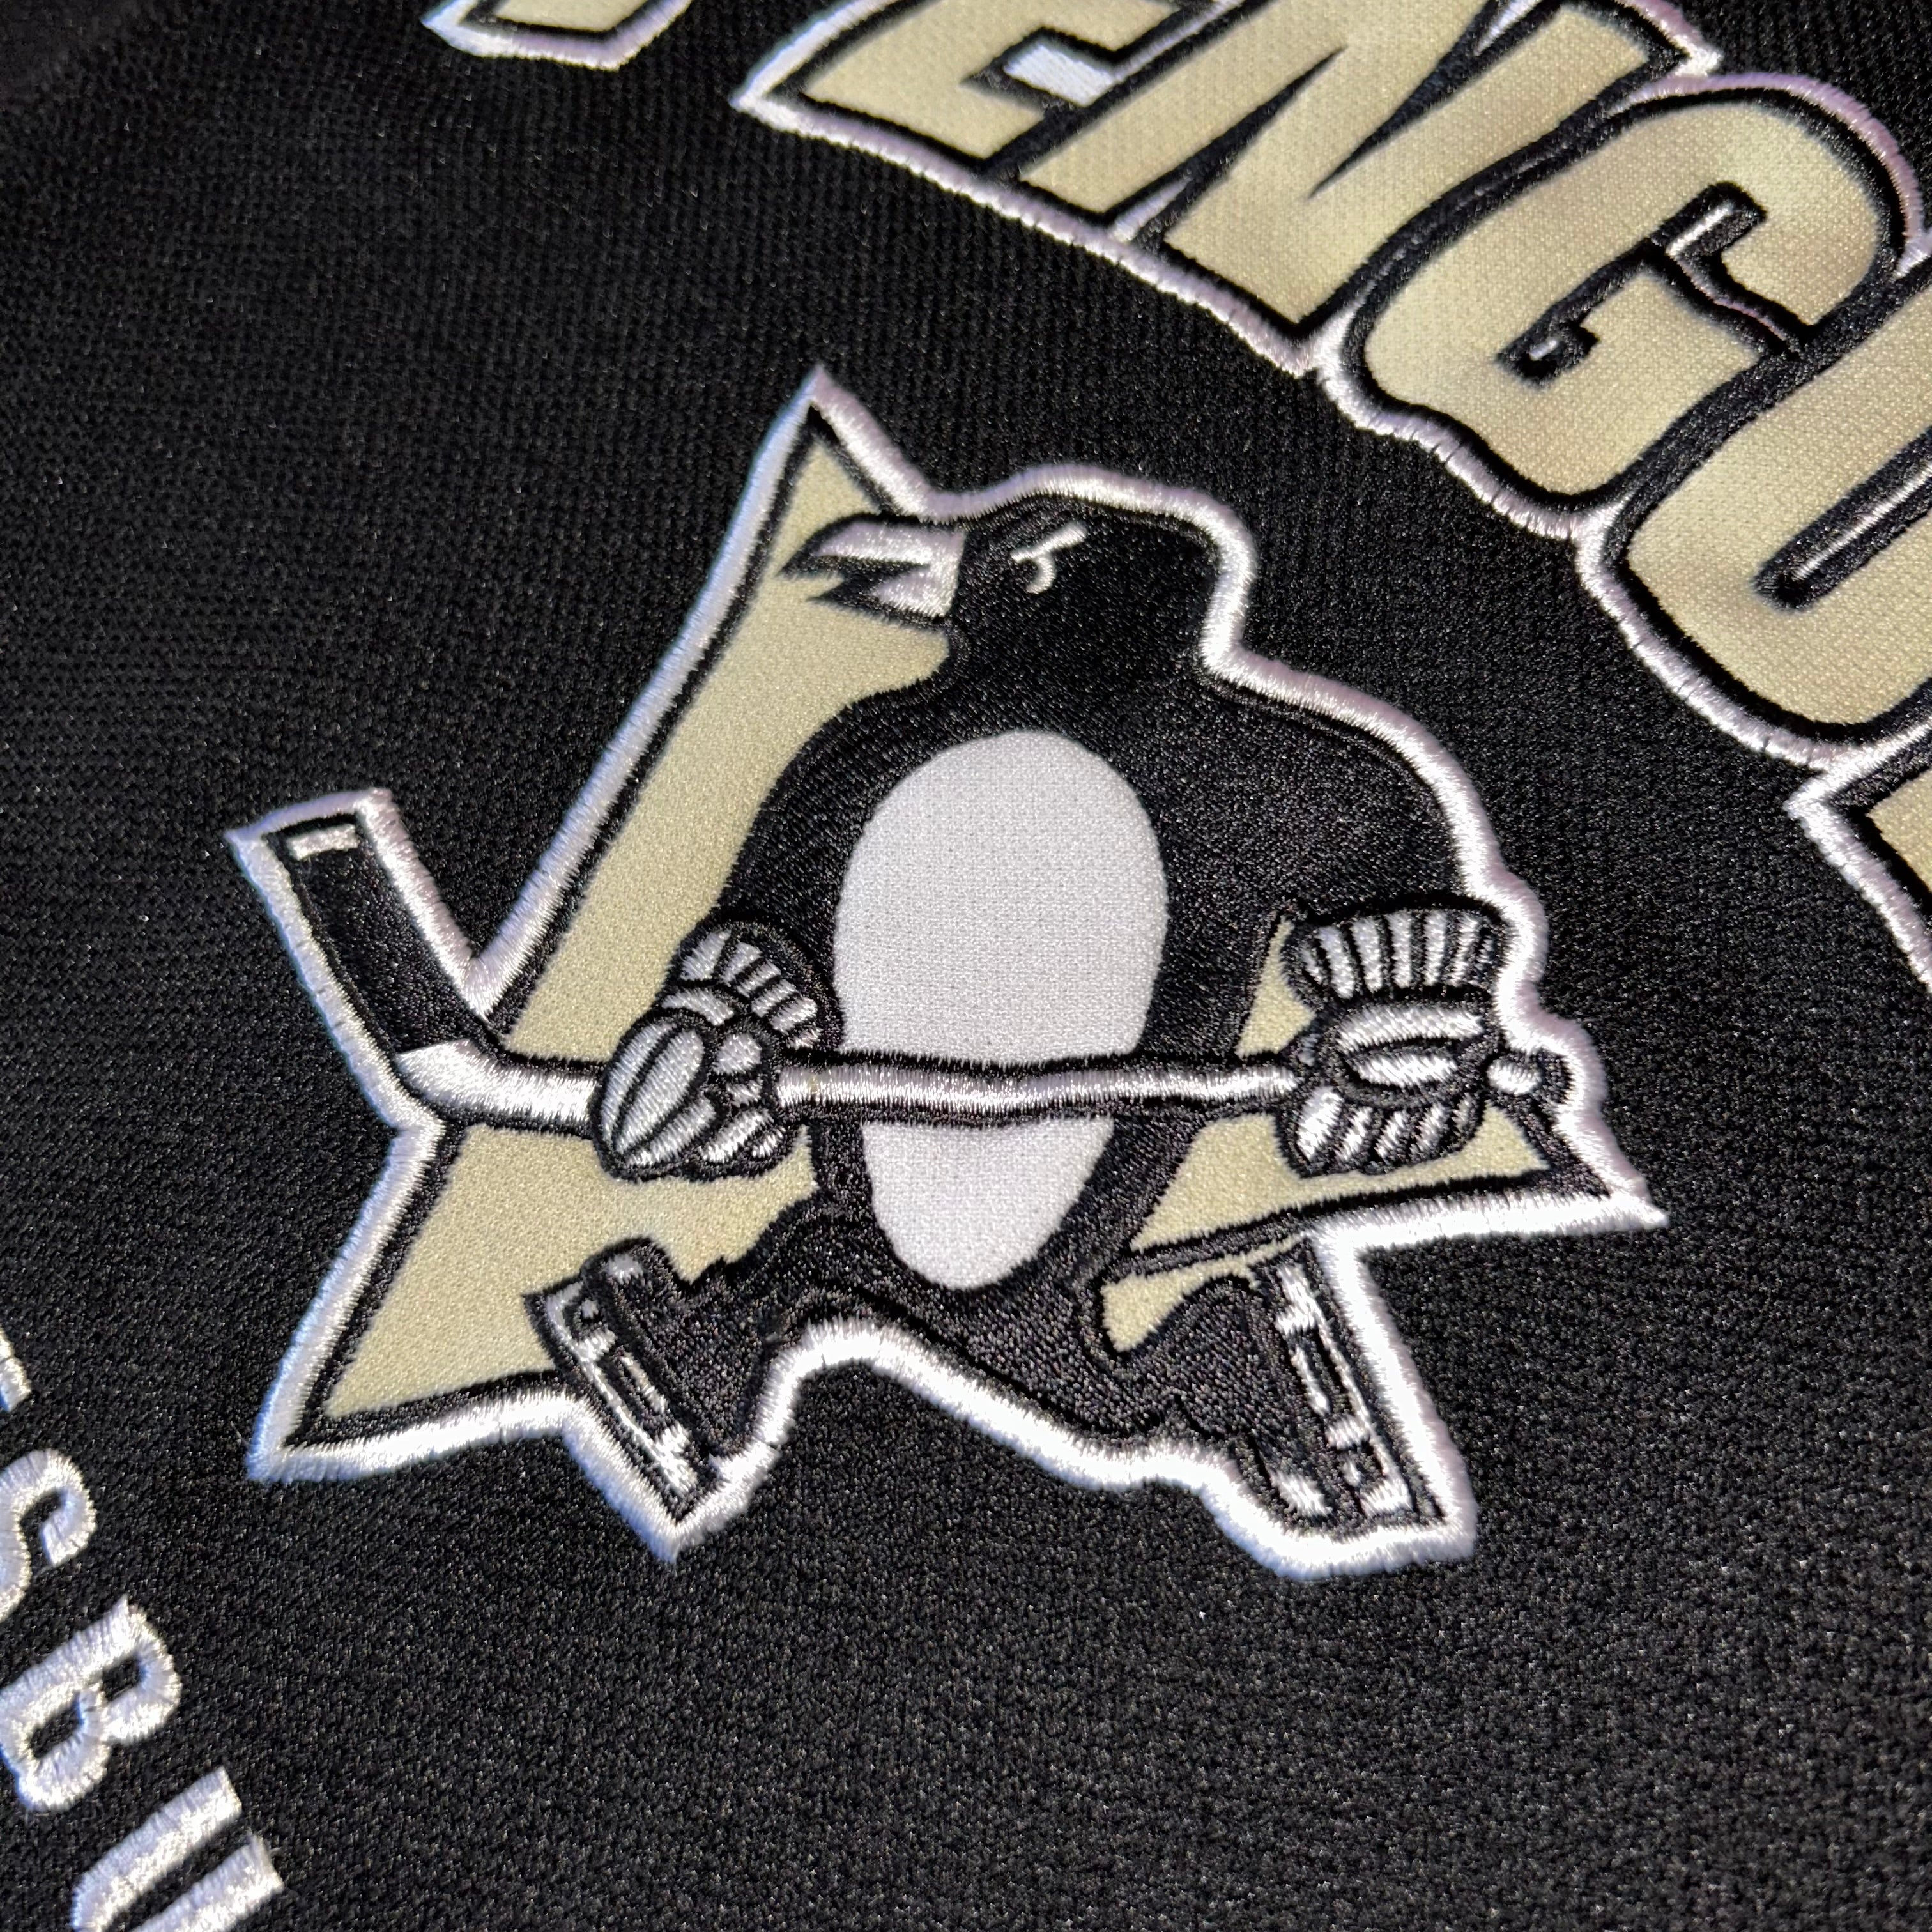 Pittsburgh Penguins NHL Vintage Jersey (S)